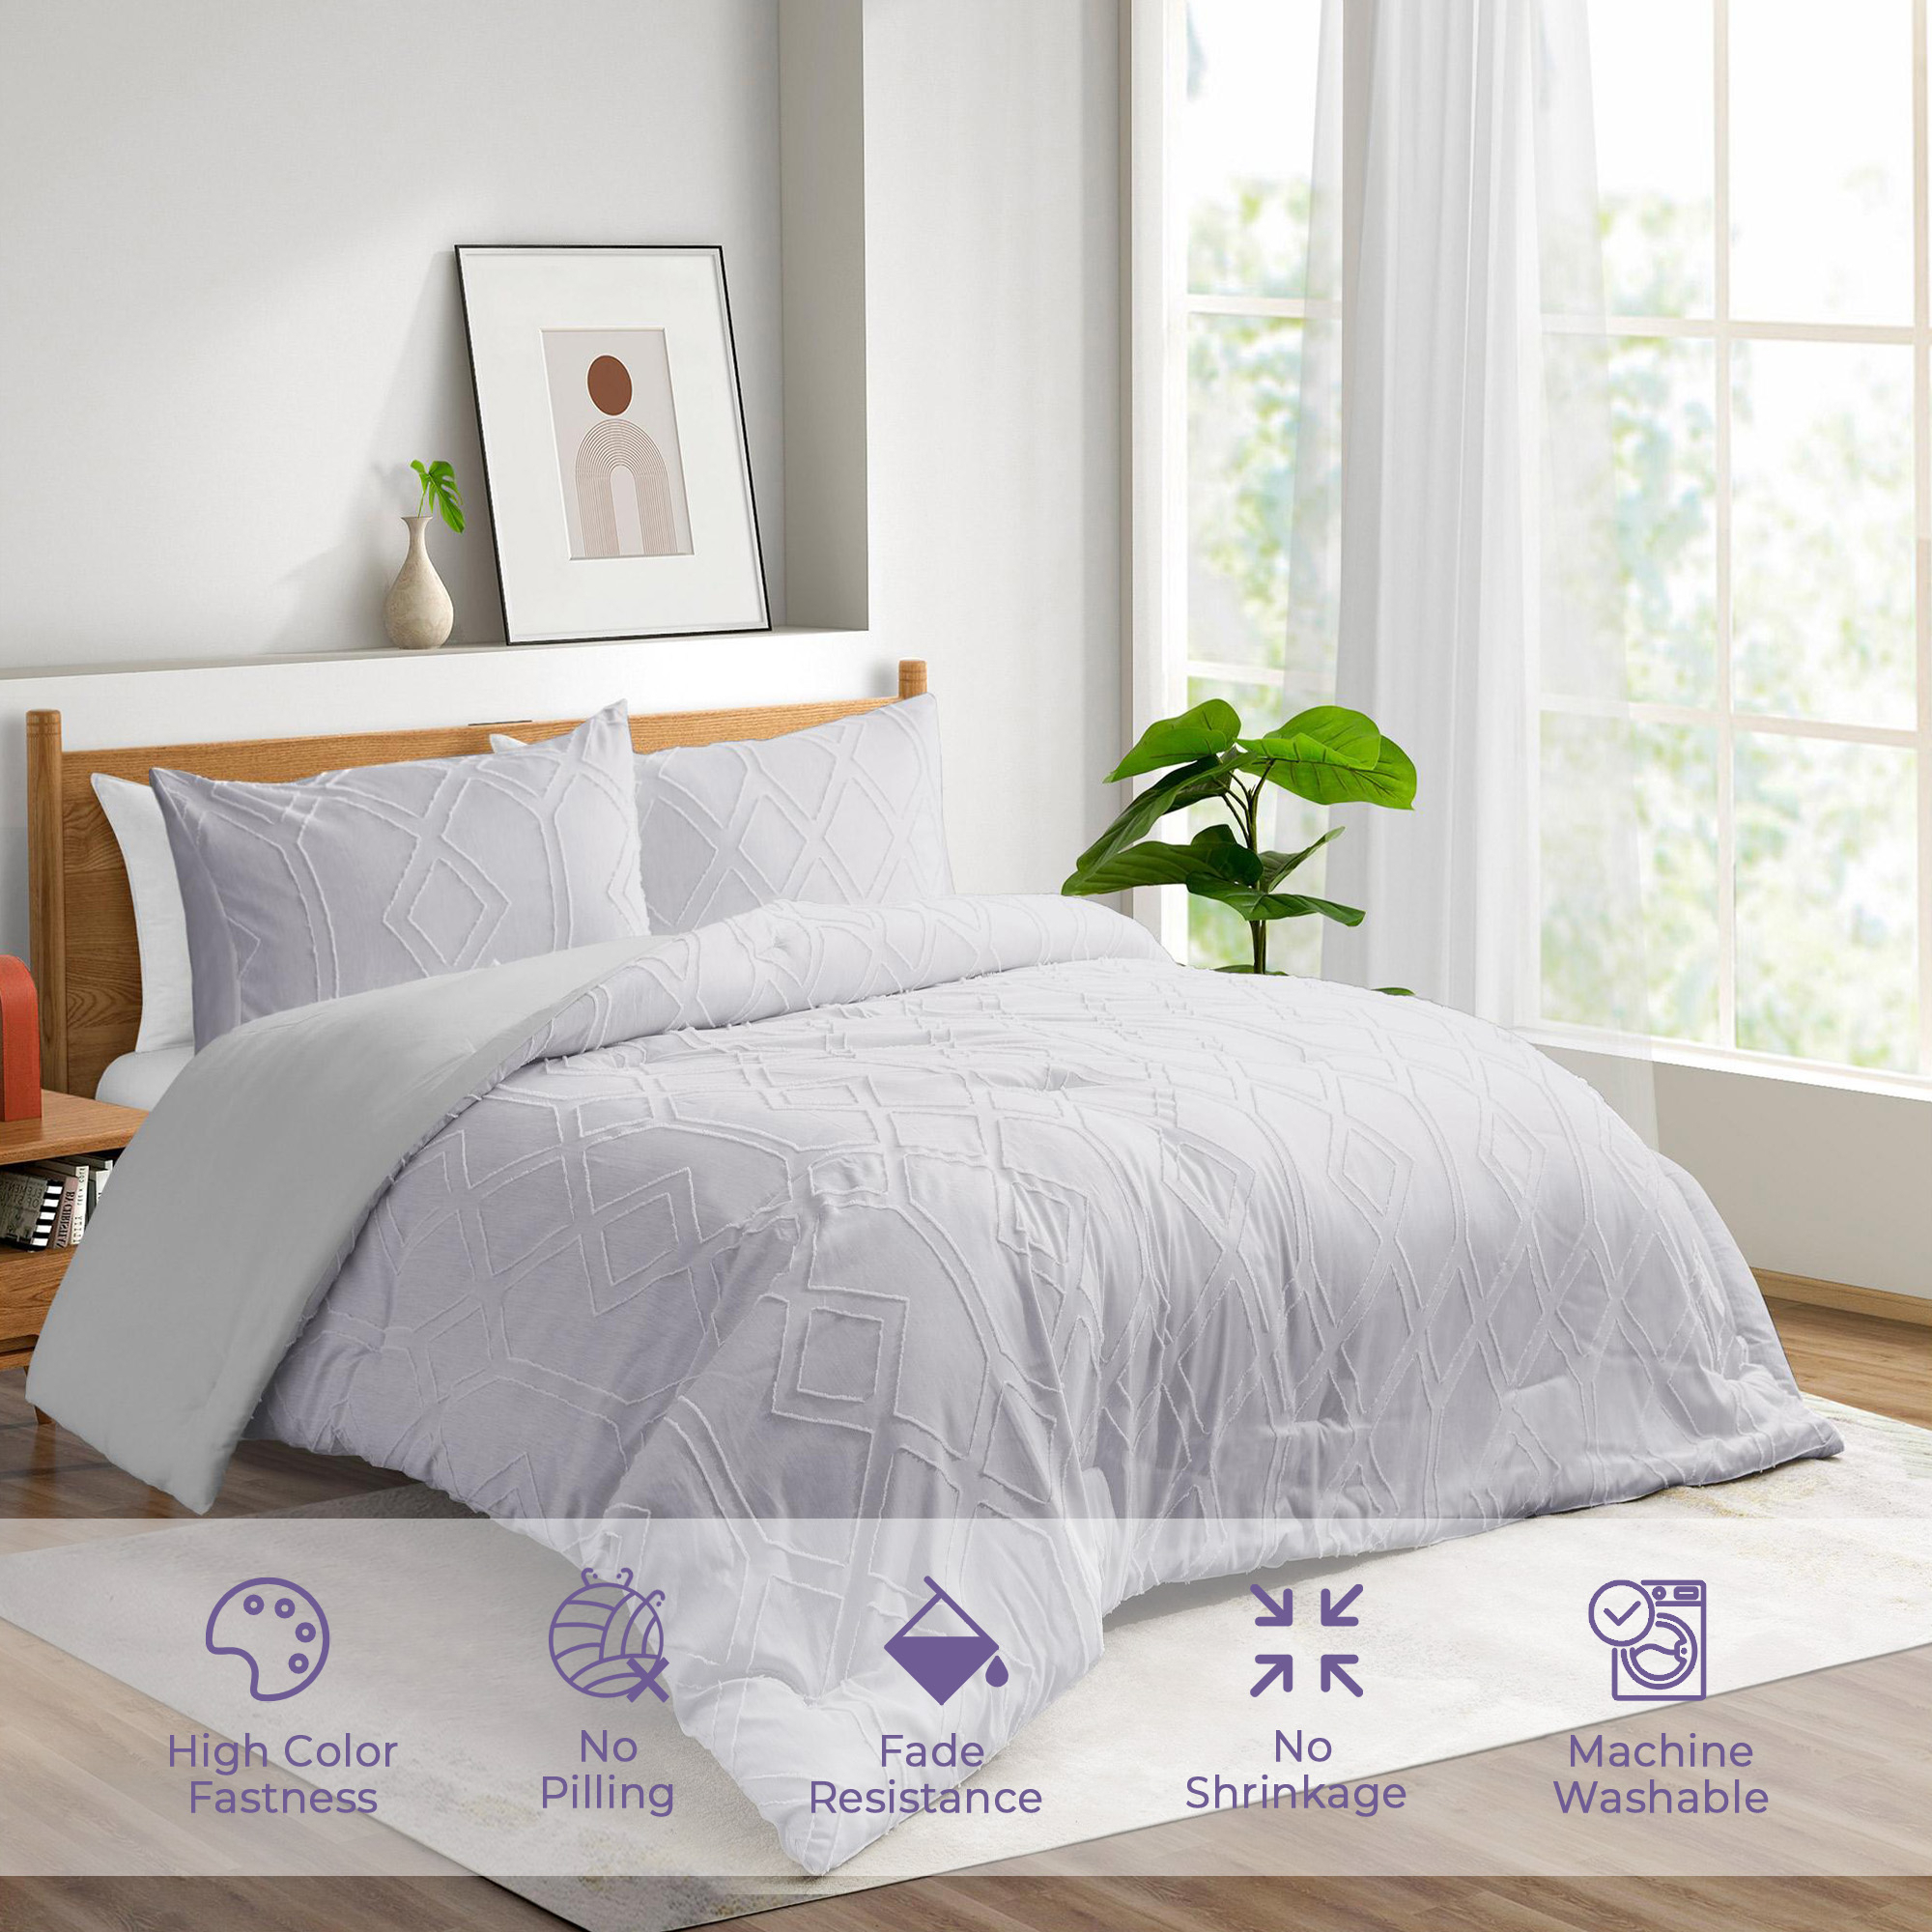 Comforter Sets Microfiber Down Alternative Bedspreads Bedding Set - King Size